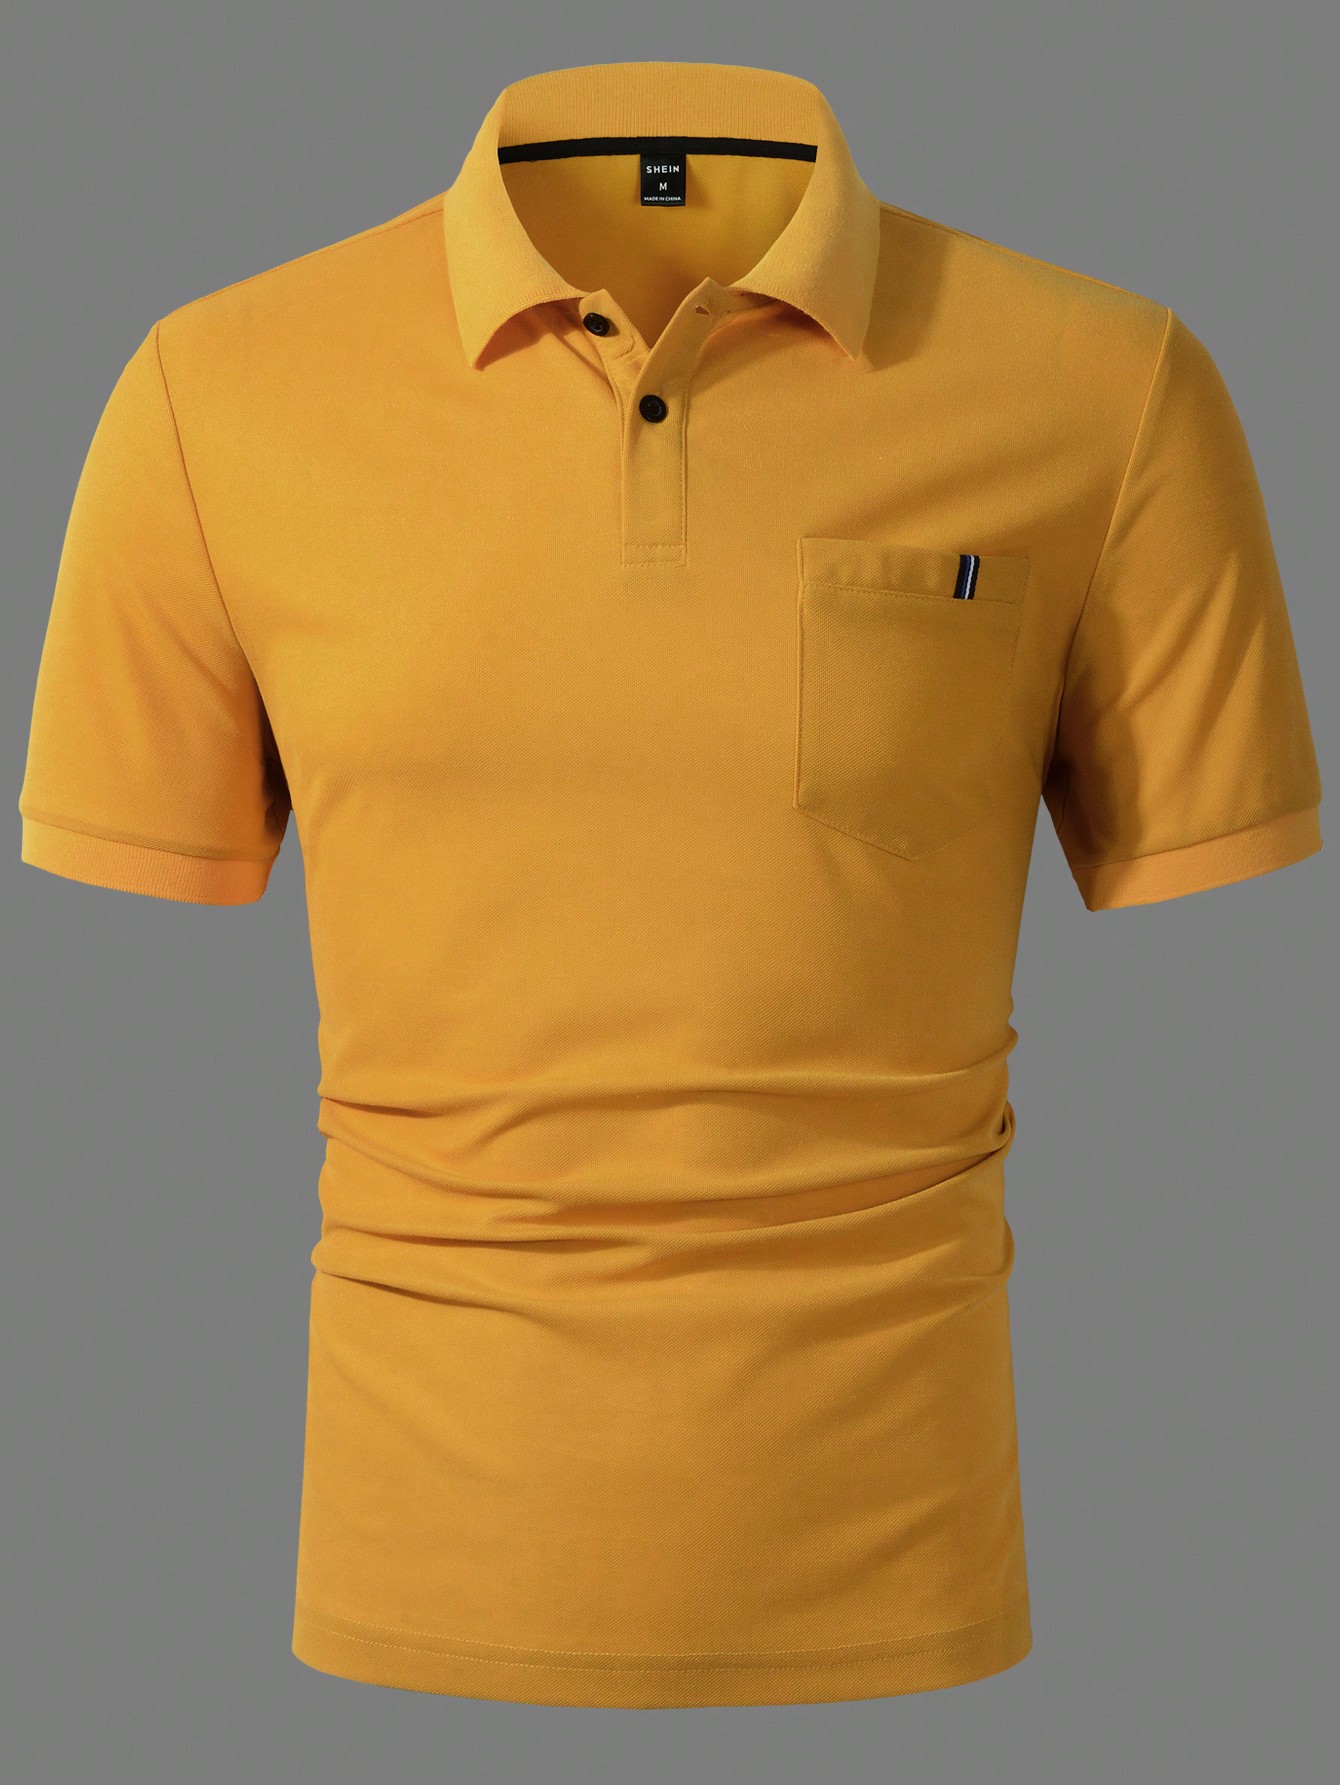 Мужская однотонная рубашка-поло с короткими рукавами Manfinity Homme, желтый синяя рубашка поло с коротким рукавом 72742 мш21 38 152